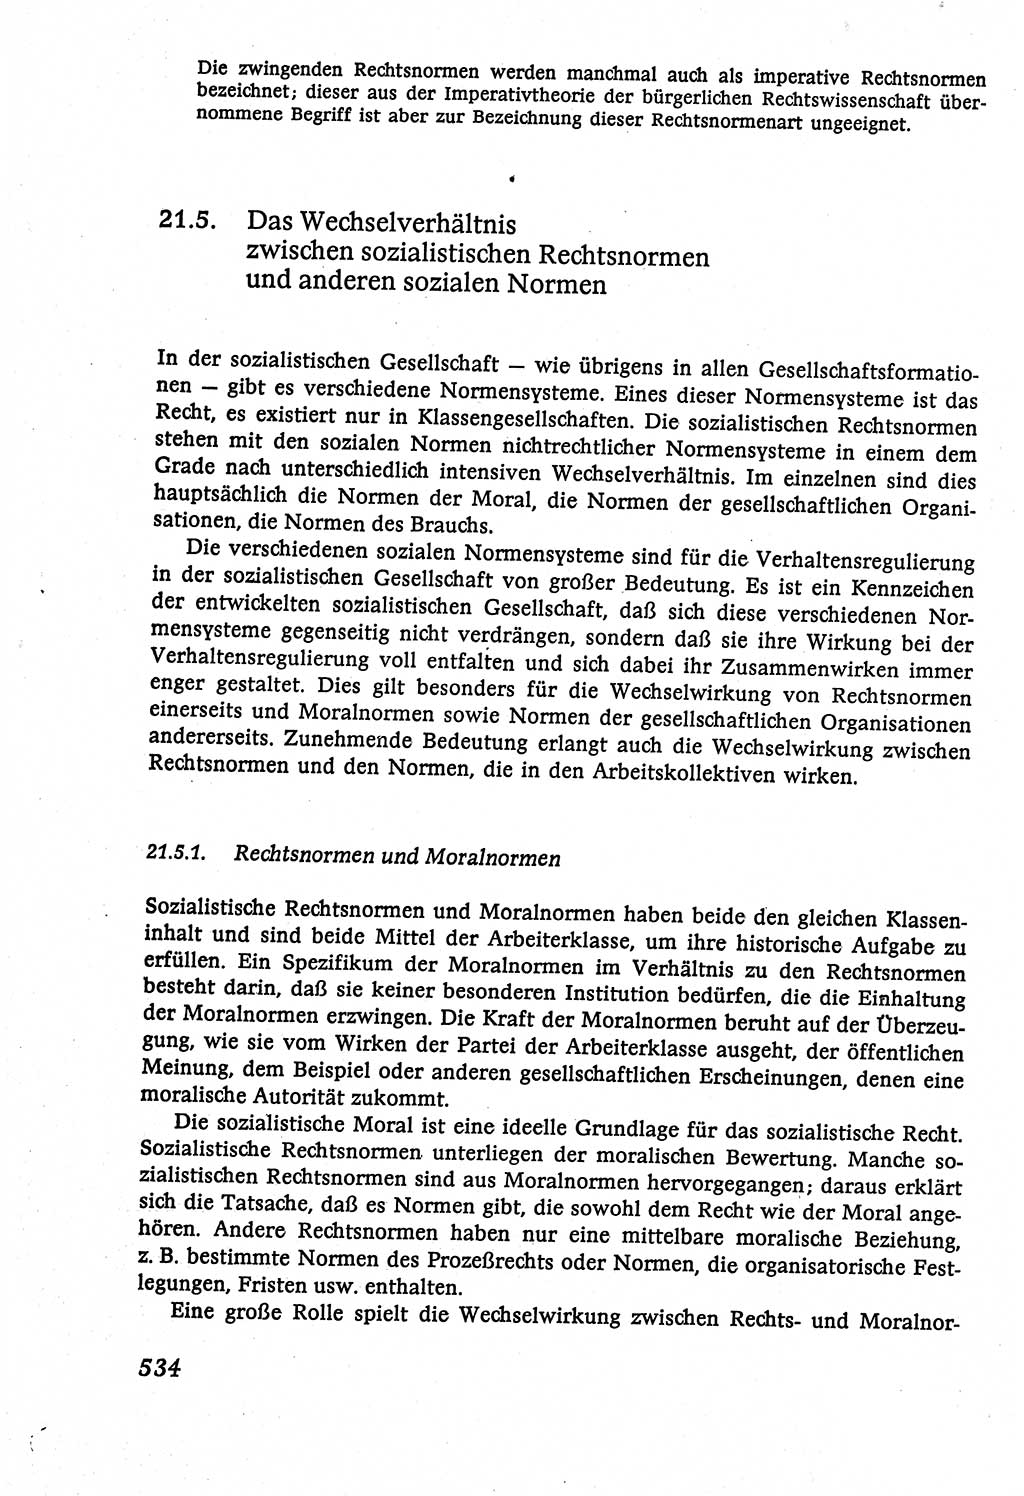 Marxistisch-leninistische (ML) Staats- und Rechtstheorie [Deutsche Demokratische Republik (DDR)], Lehrbuch 1980, Seite 534 (ML St.-R.-Th. DDR Lb. 1980, S. 534)